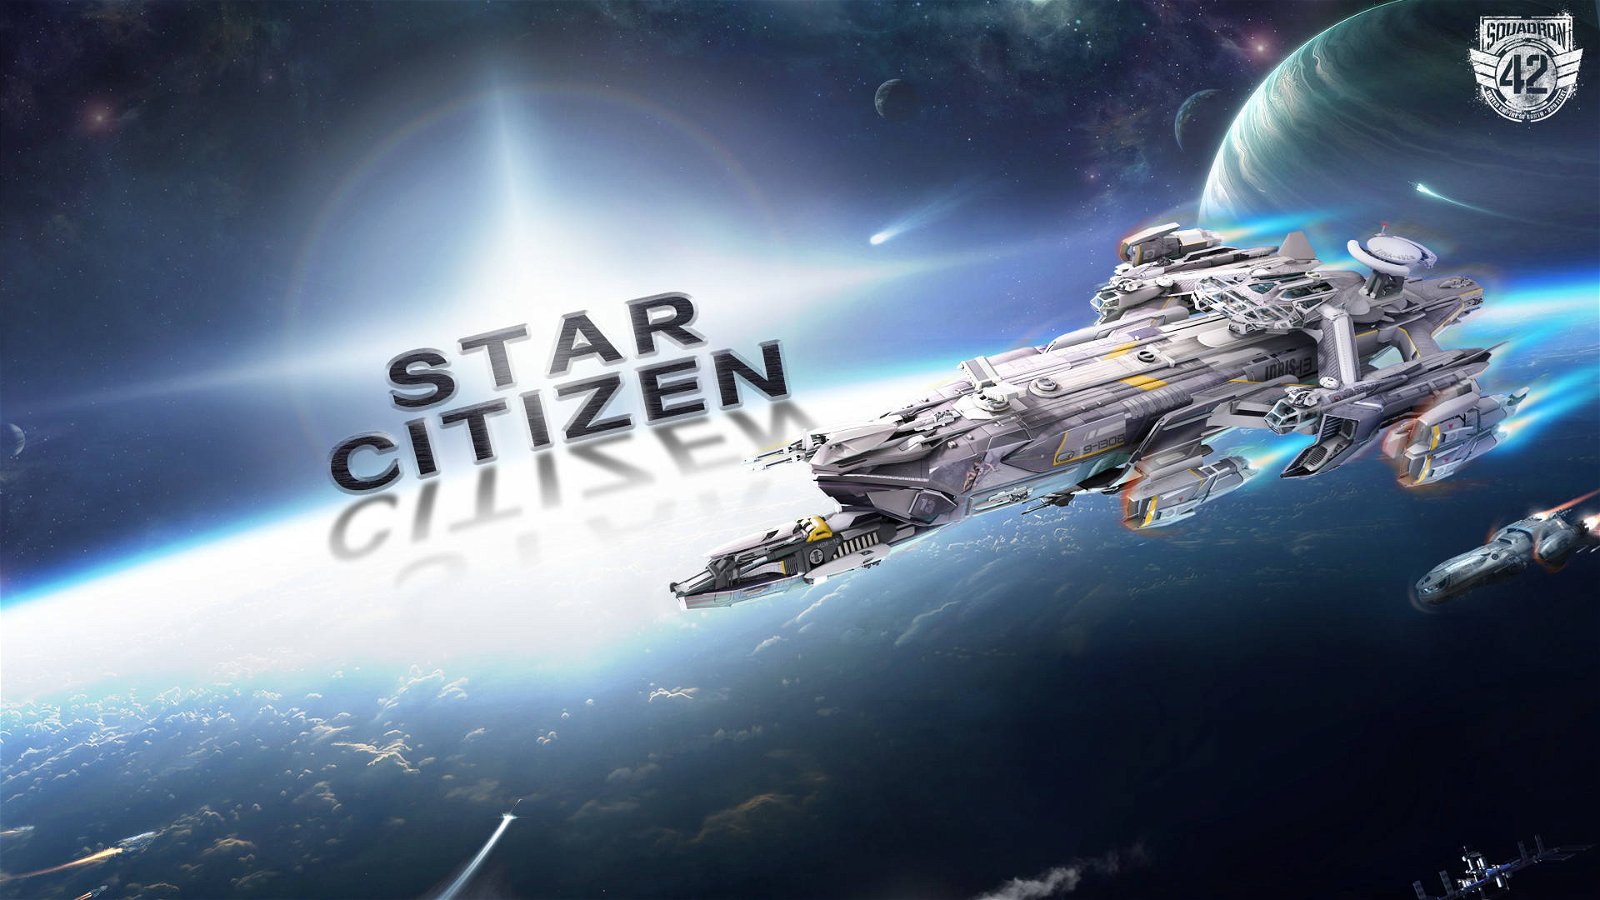 Immagine di Star Citizen si assicura 17.25 milioni di dollari per continuare lo sviluppo